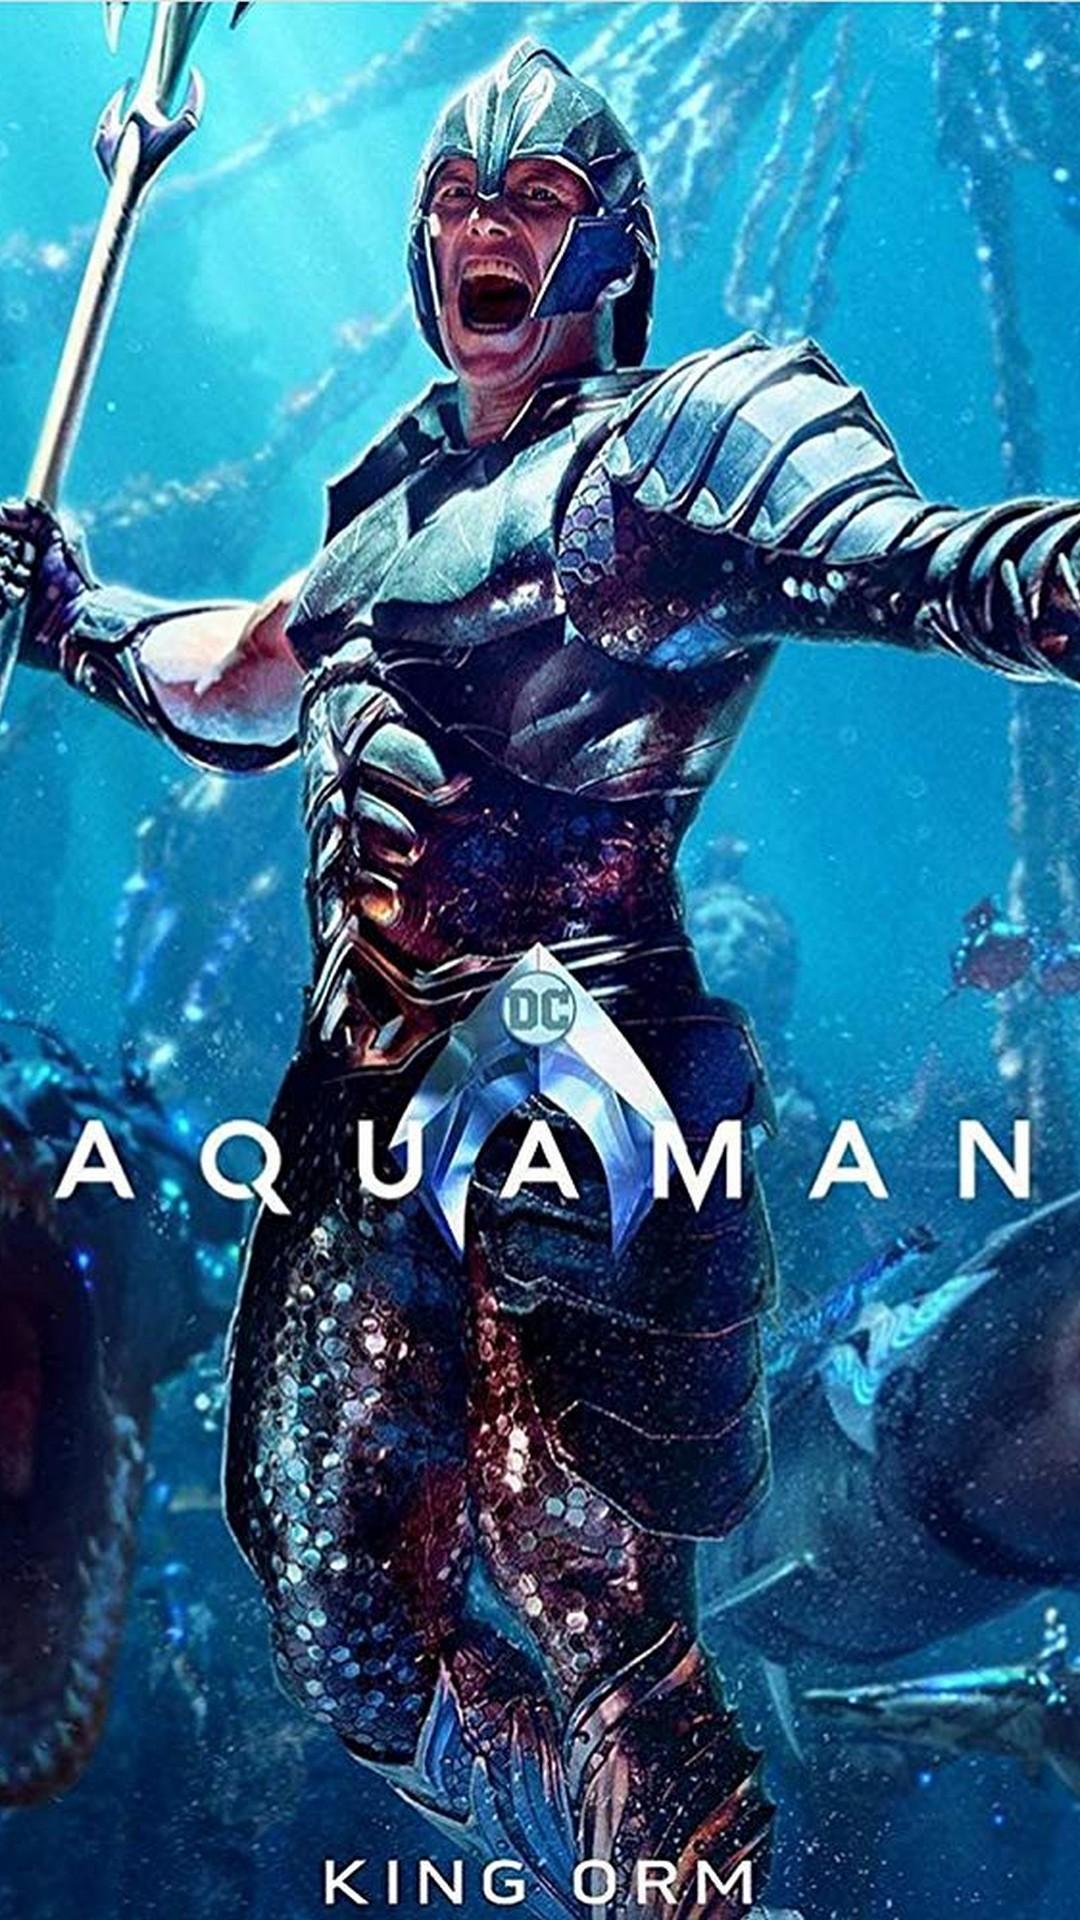 Aquaman Wallpapers - Top 35 Best Aquaman Backgrounds Download